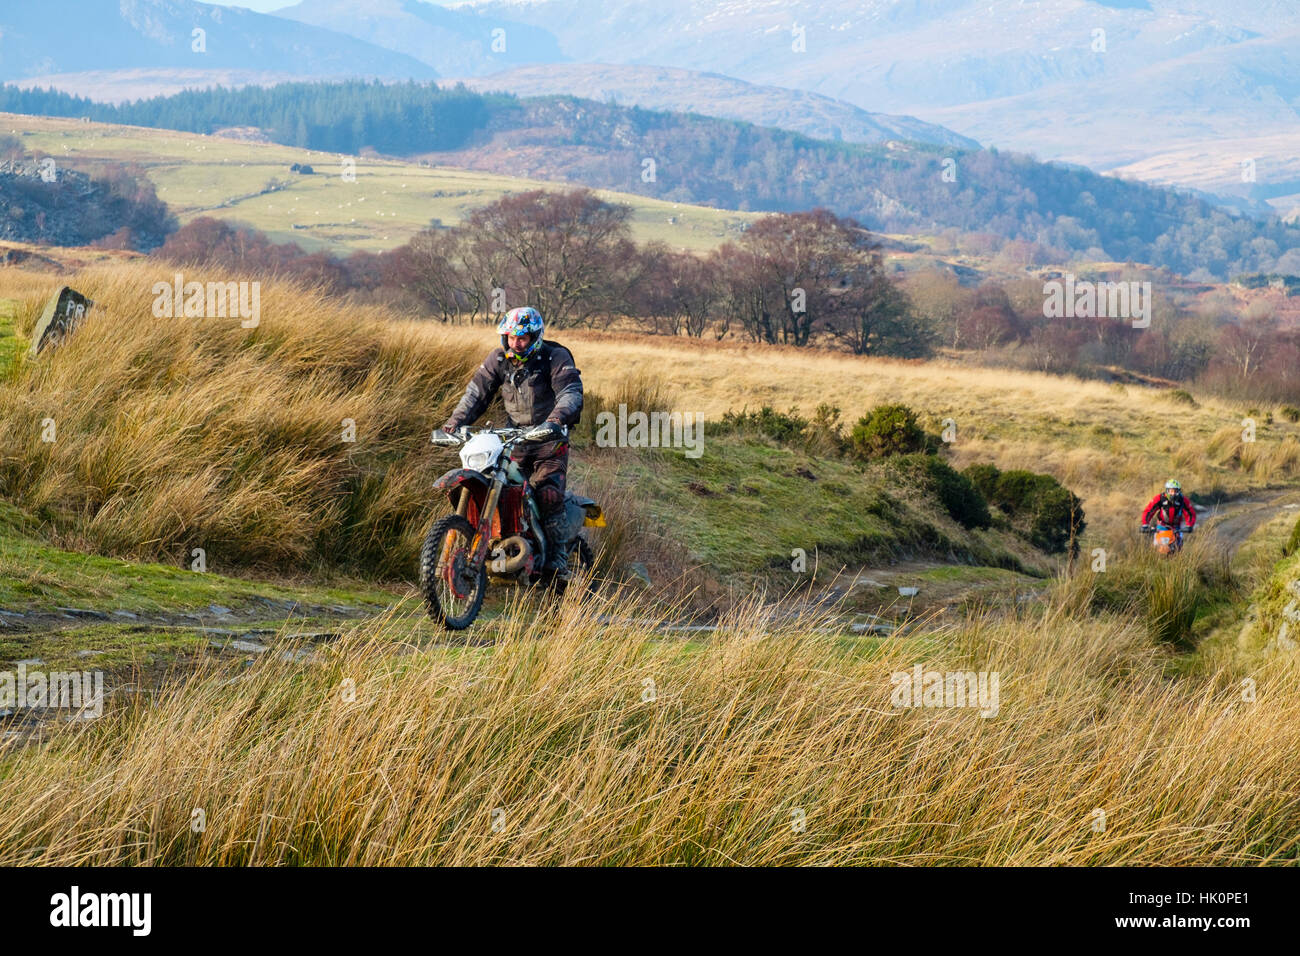 Hombres que viajaban en una moto en un país multi-uso vía en el Parque Nacional de Snowdonia. Capel Curig, Conwy, Gales, Reino Unido, Gran Bretaña. Foto de stock